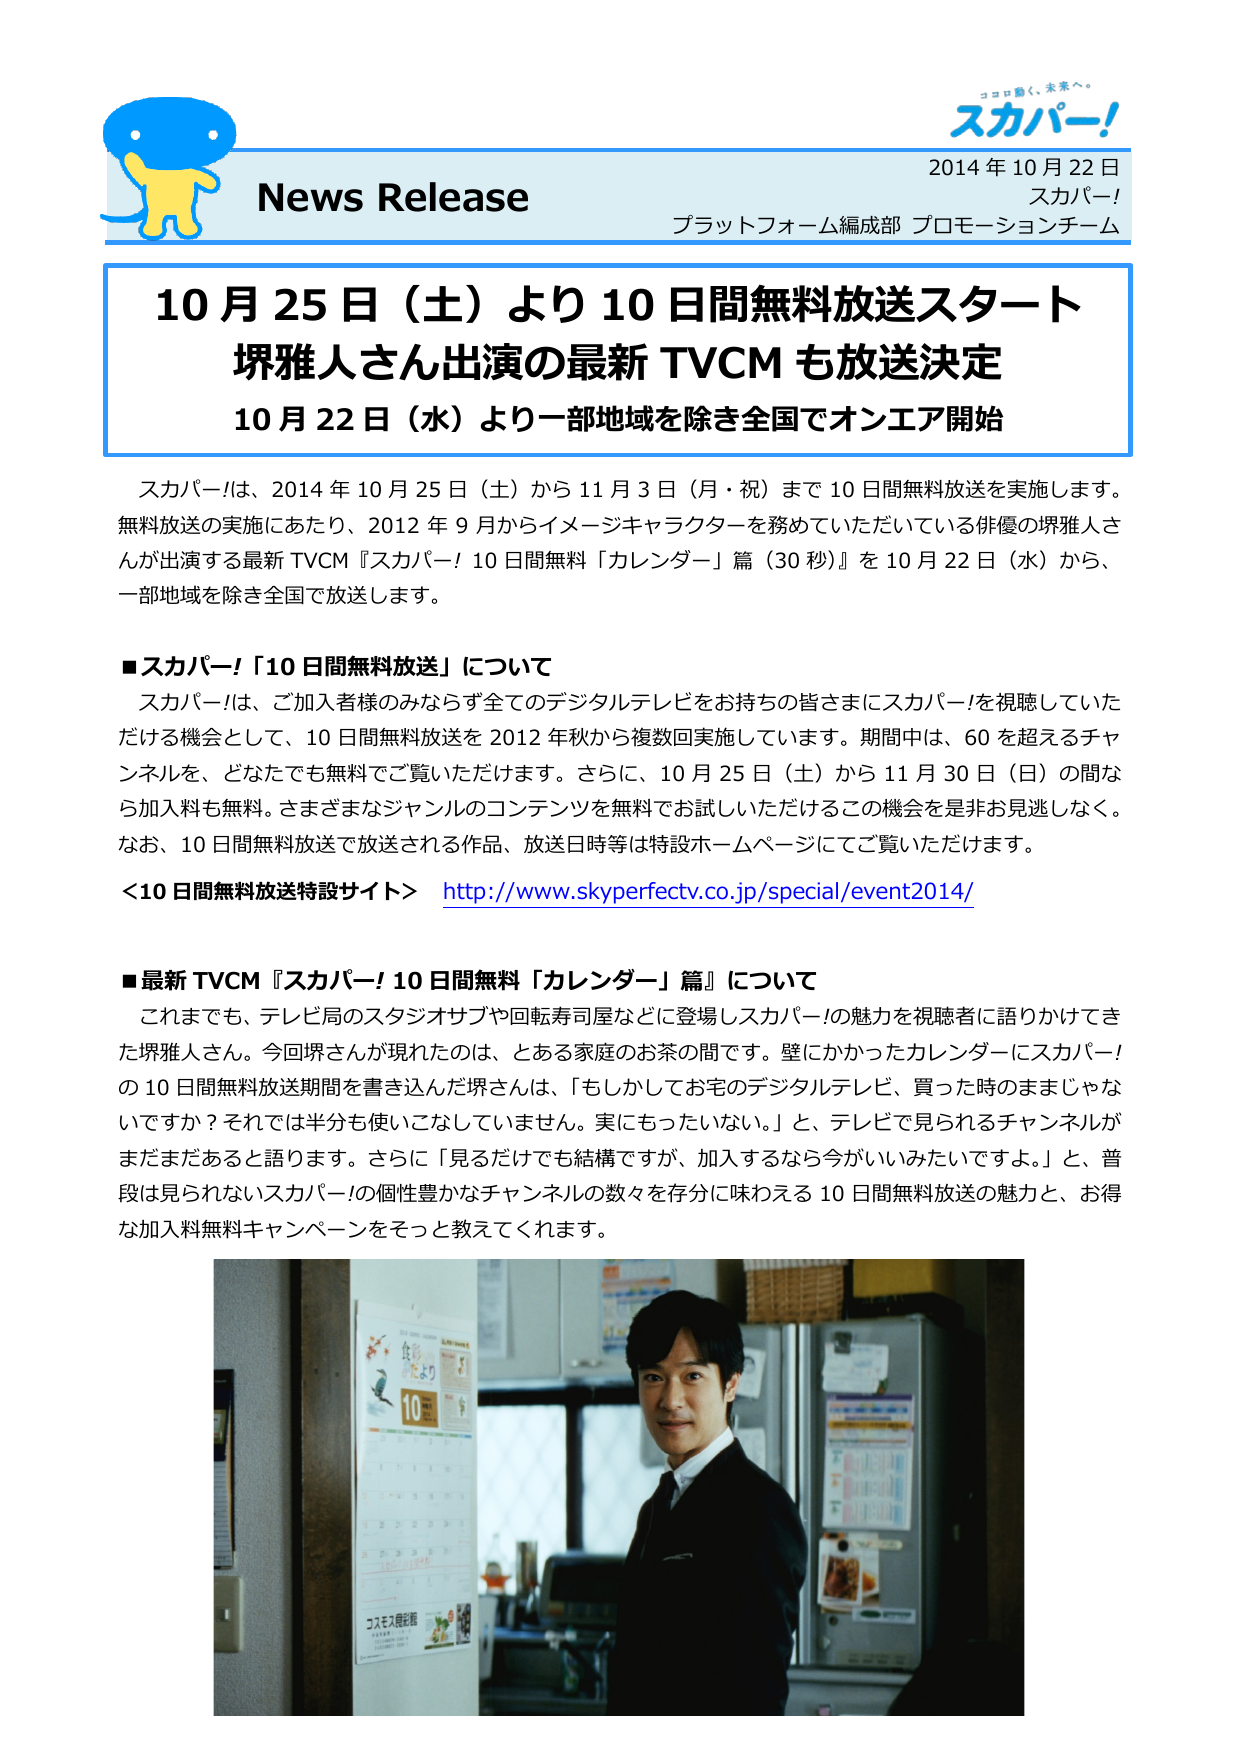 10 月 25 日 土 より 10 日間無料放送スタート 堺雅人さん出演の最新